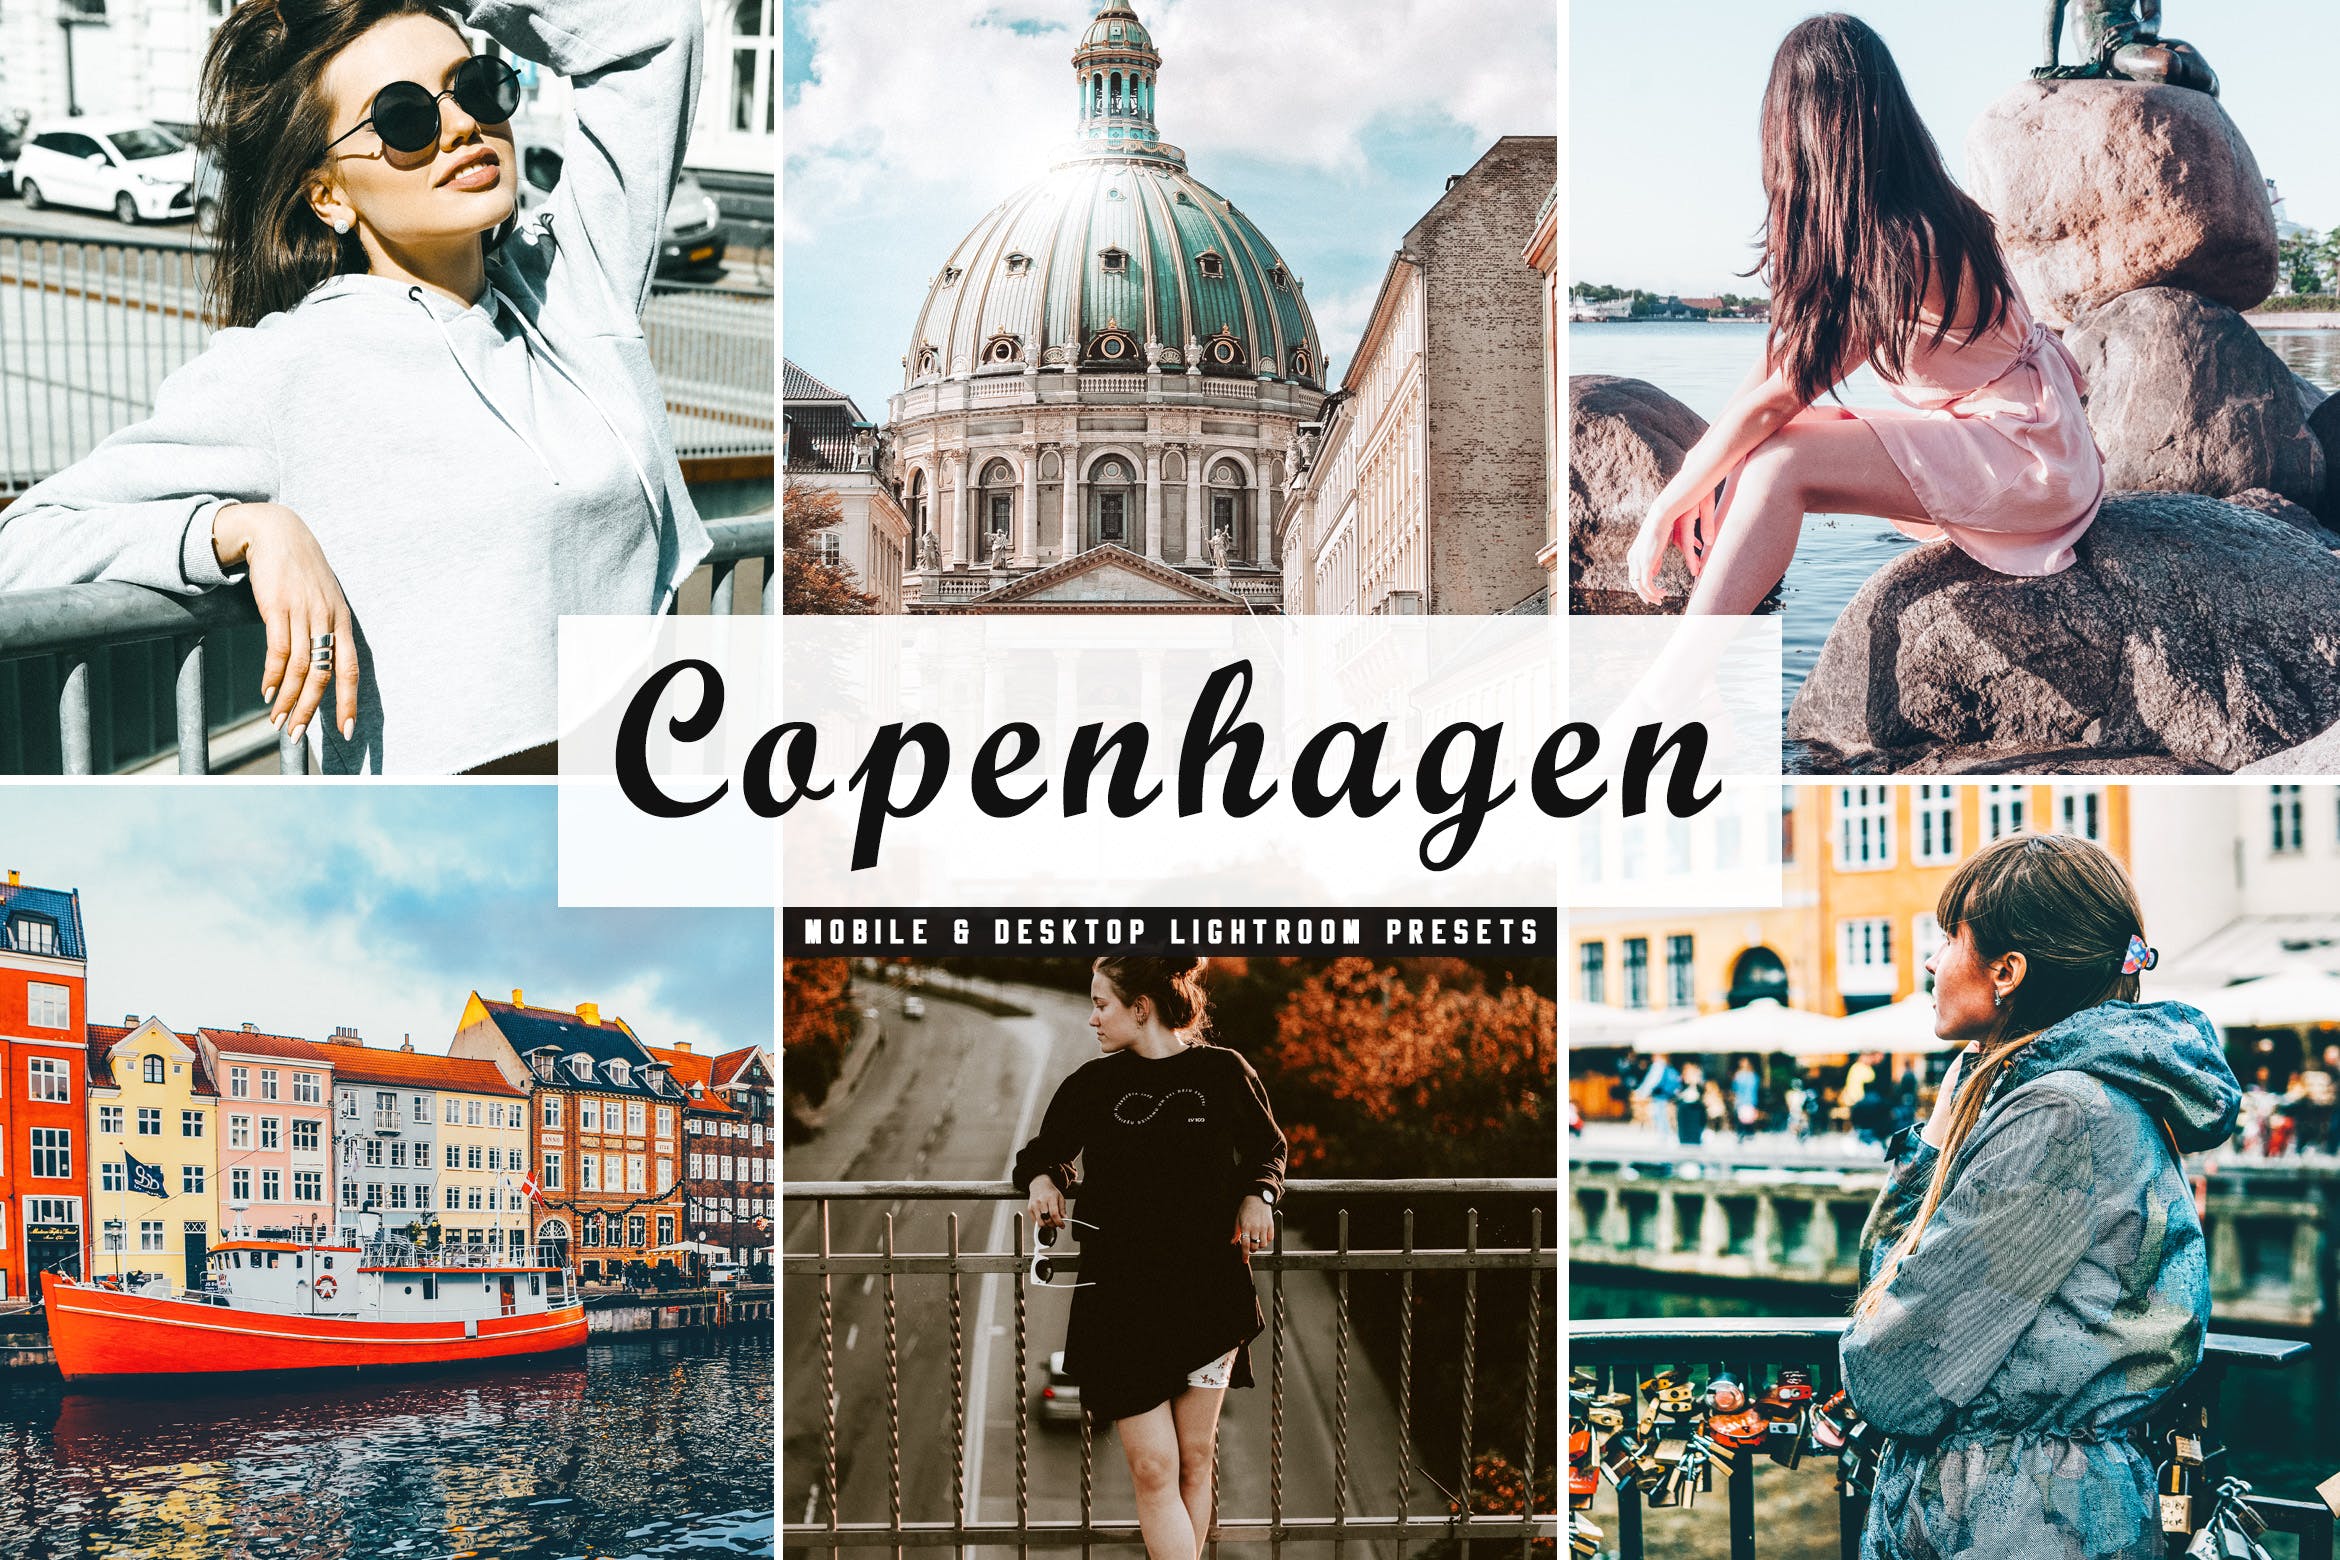 人物风景摄影亮色暖色调处理16设计素材网精选LR预设下载 Copenhagen Mobile & Desktop Lightroom Presets插图